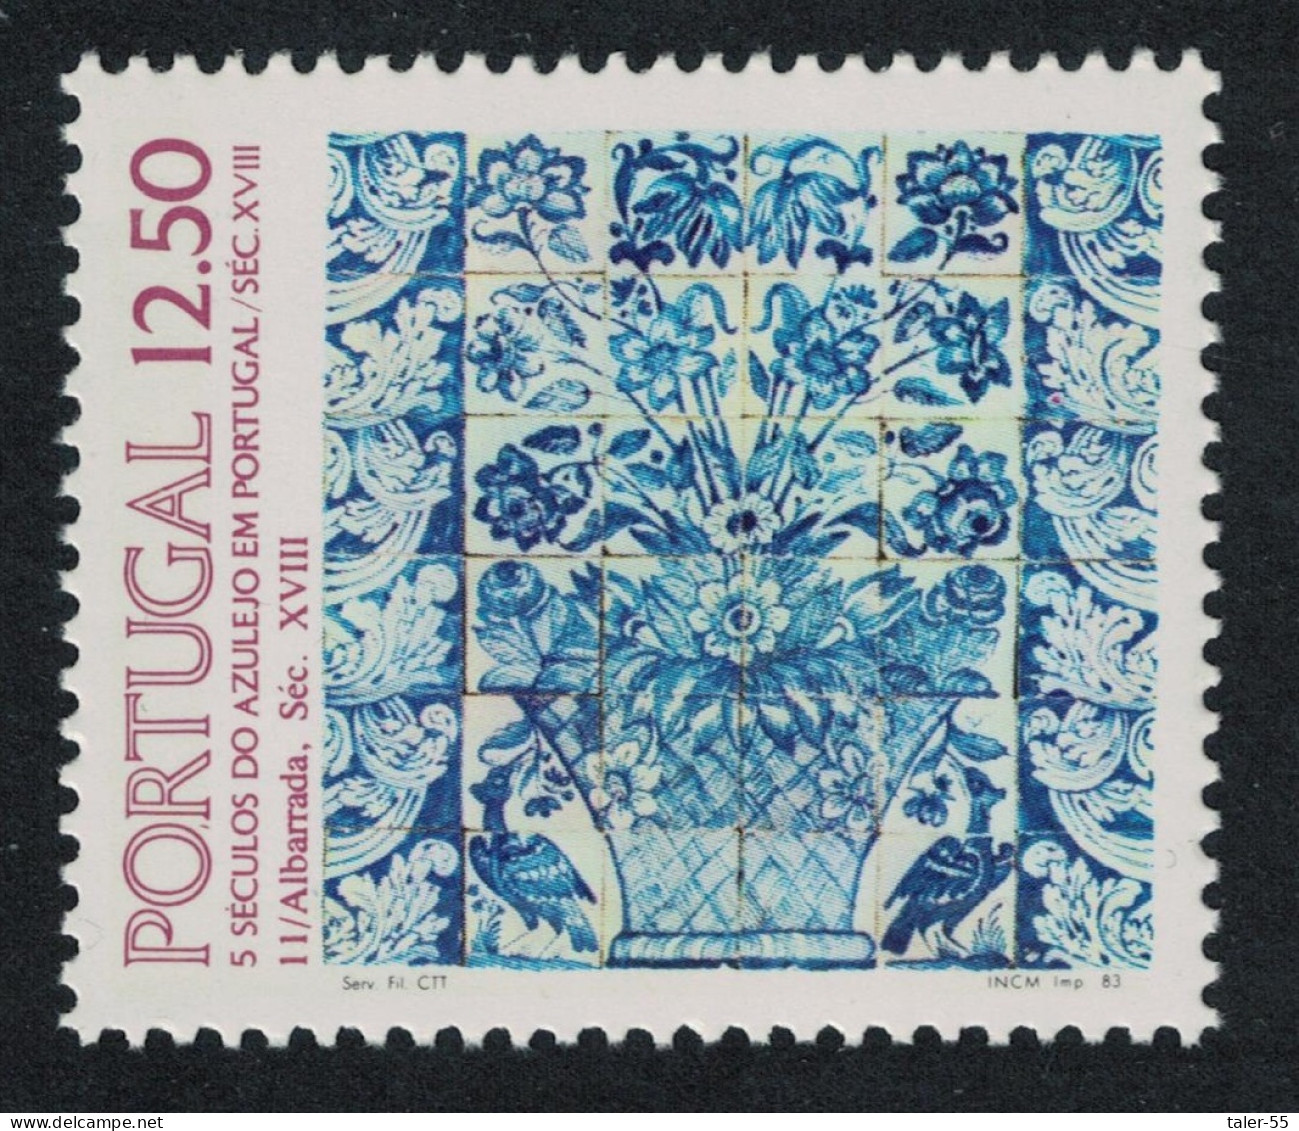 Portugal Tiles 11th Series 1983 MNH SG#1935 - Neufs